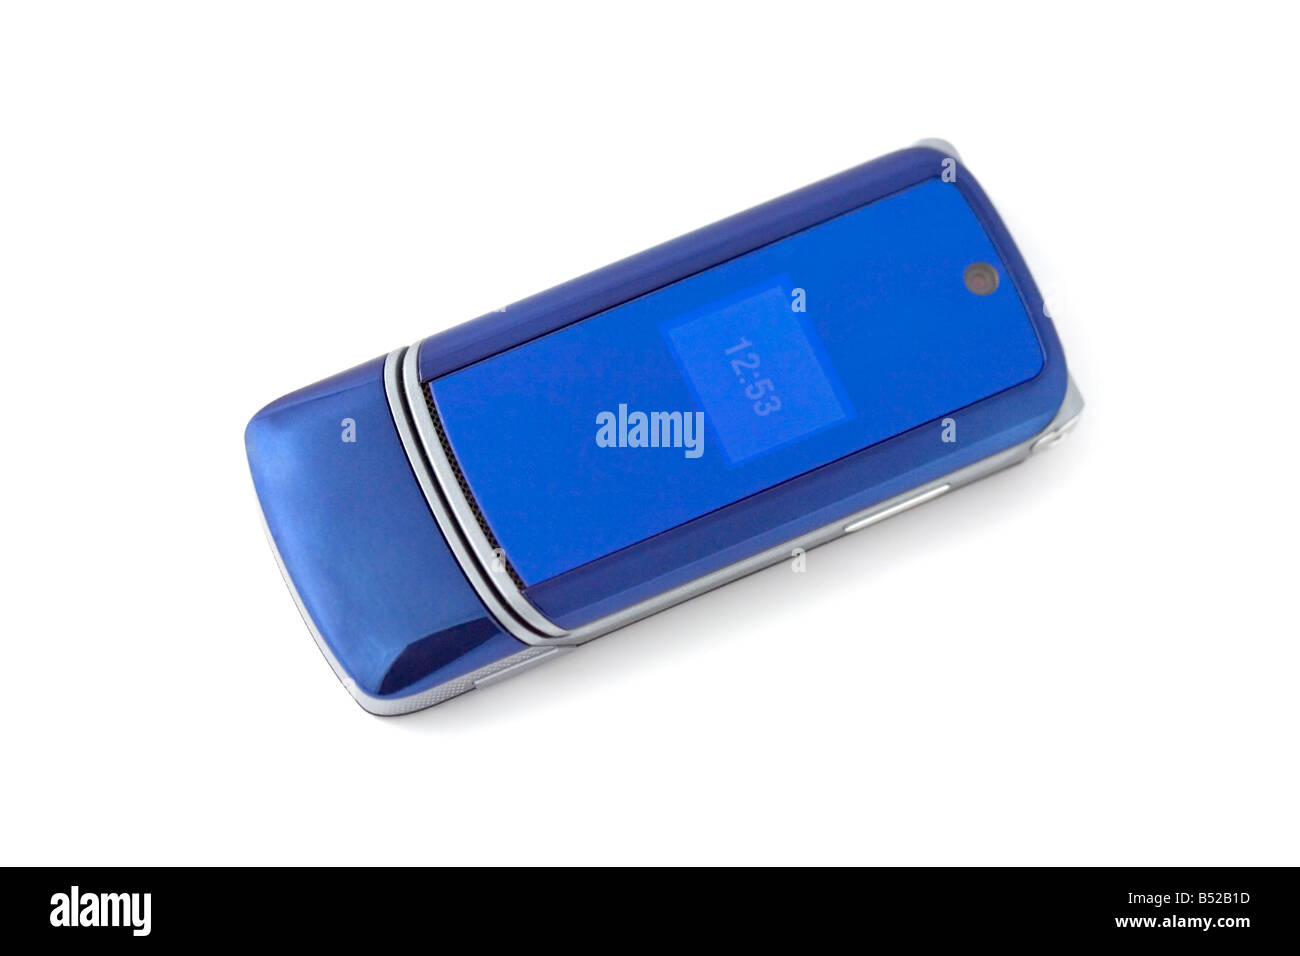 Blue telefono cellulare - stile moderno Foto Stock